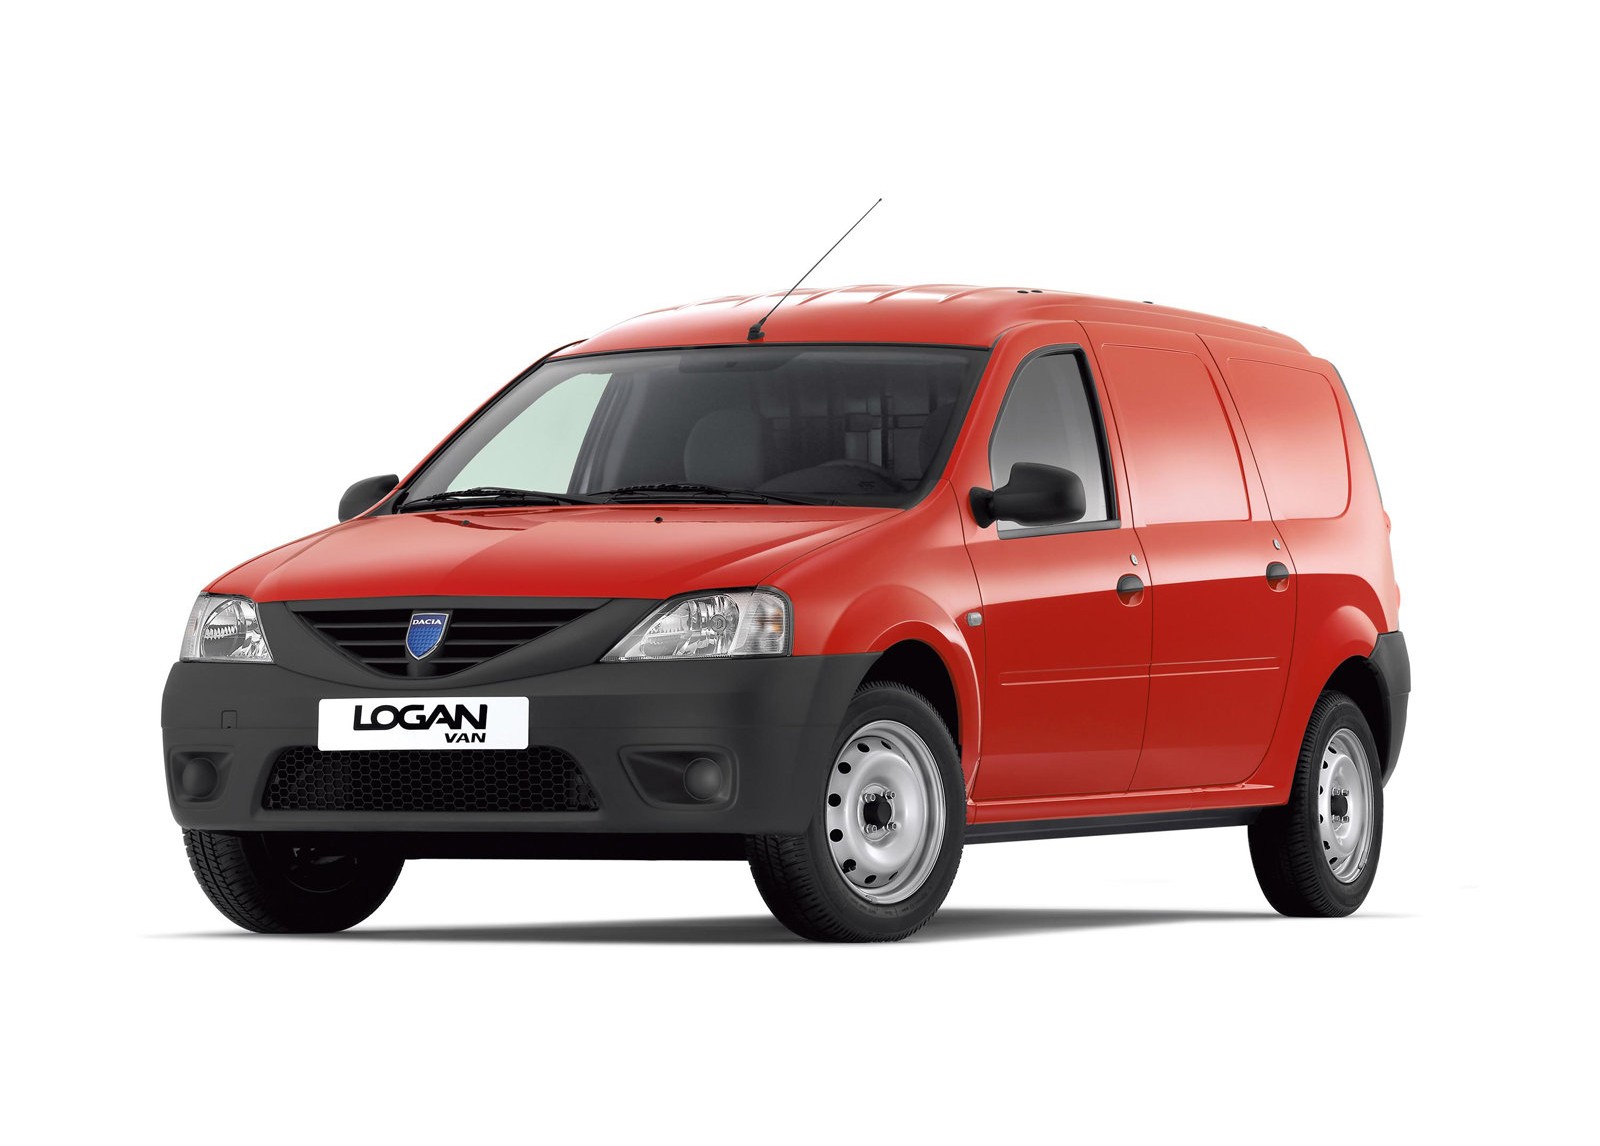 Dacia Dokker vans revealed